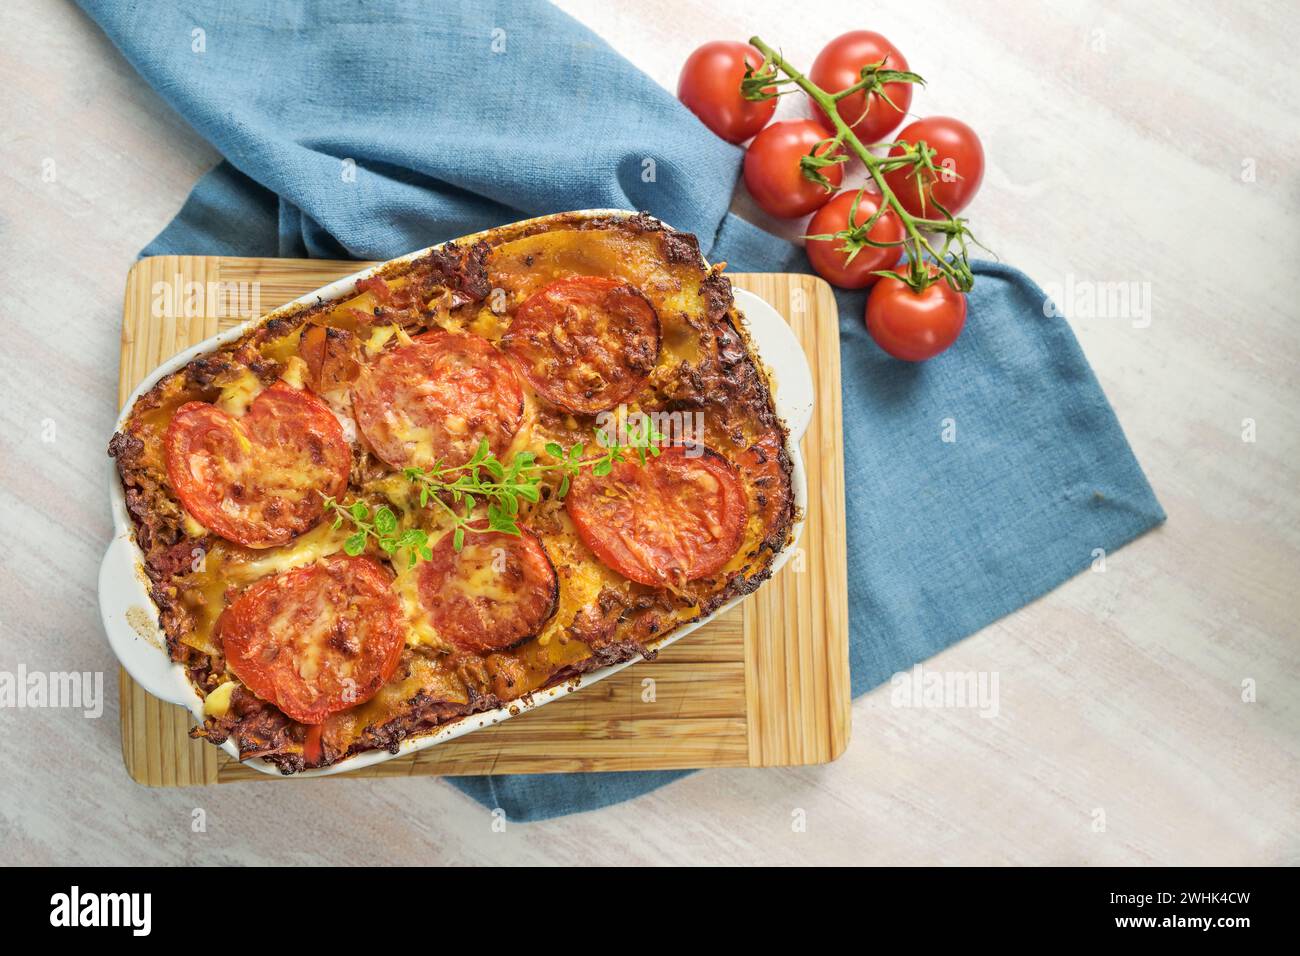 Lasagne, casserole avec des couches de pâtes, sauce bœuf bolognaise, légumes et tomates, nappées de fromage fondu sur un Kitc en bois Banque D'Images